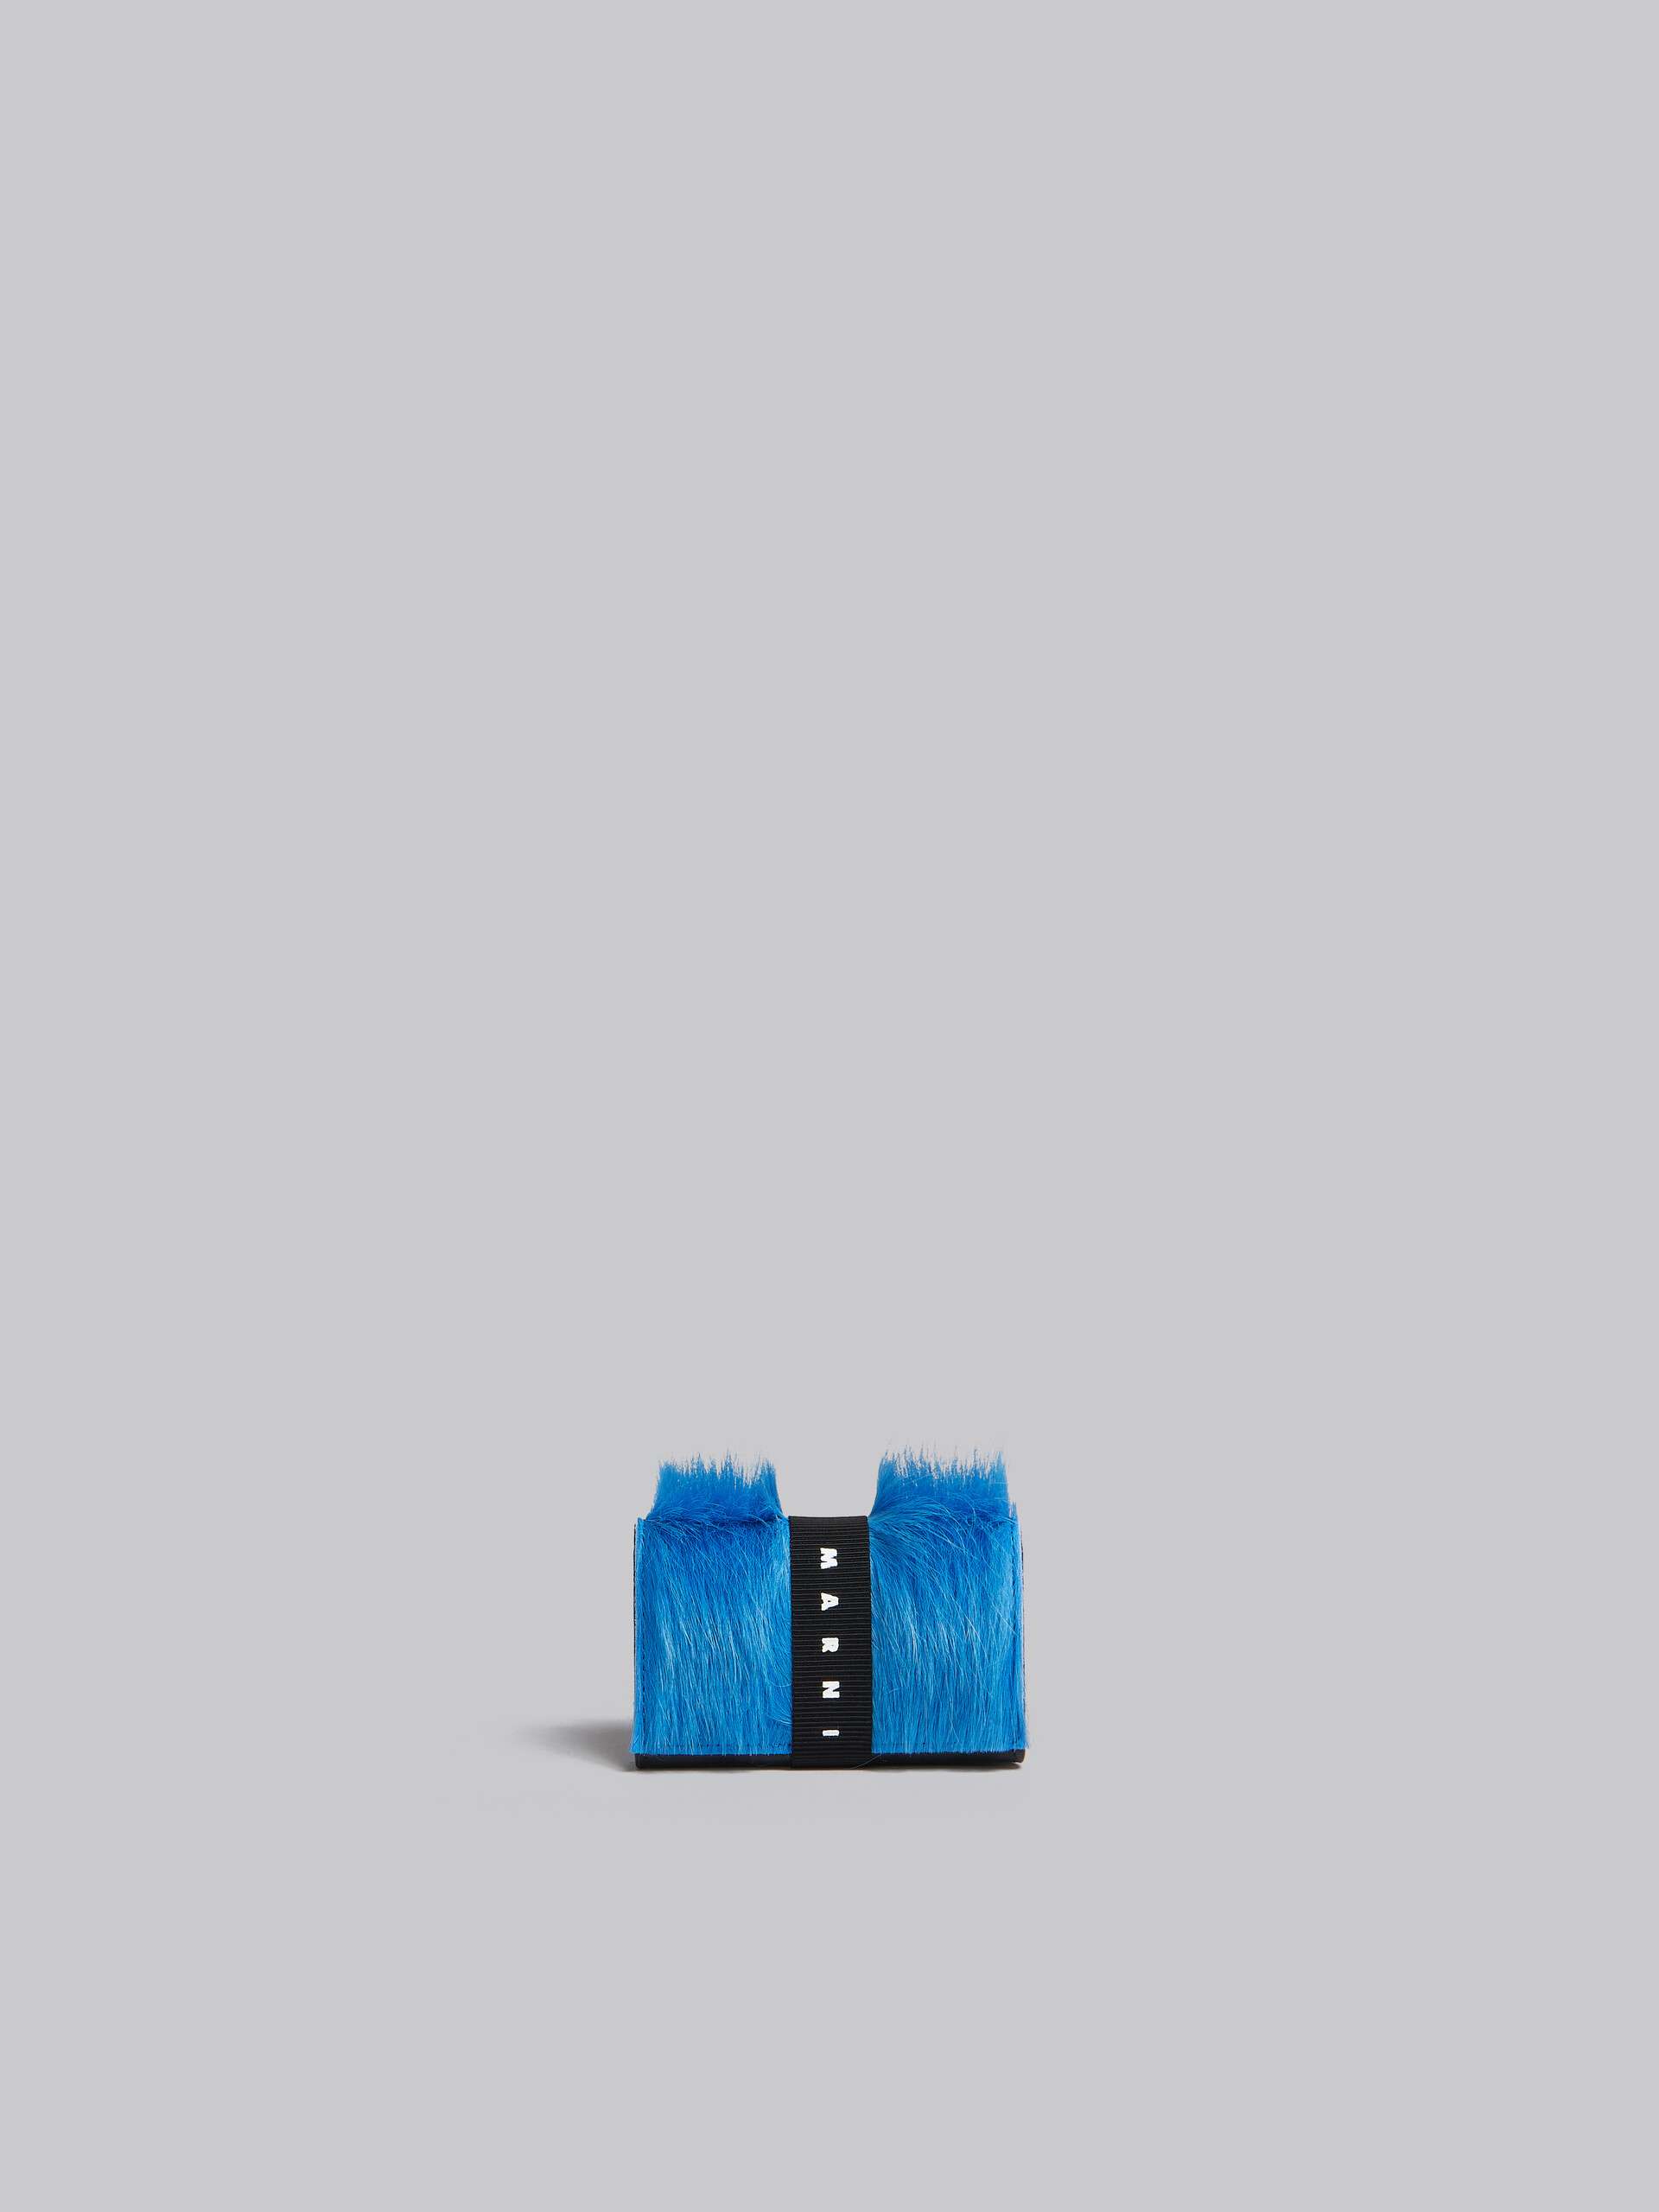 Portafoglio tri-fold in vitello a pelo lungo blu con cinturino logato - Portafogli - Image 3